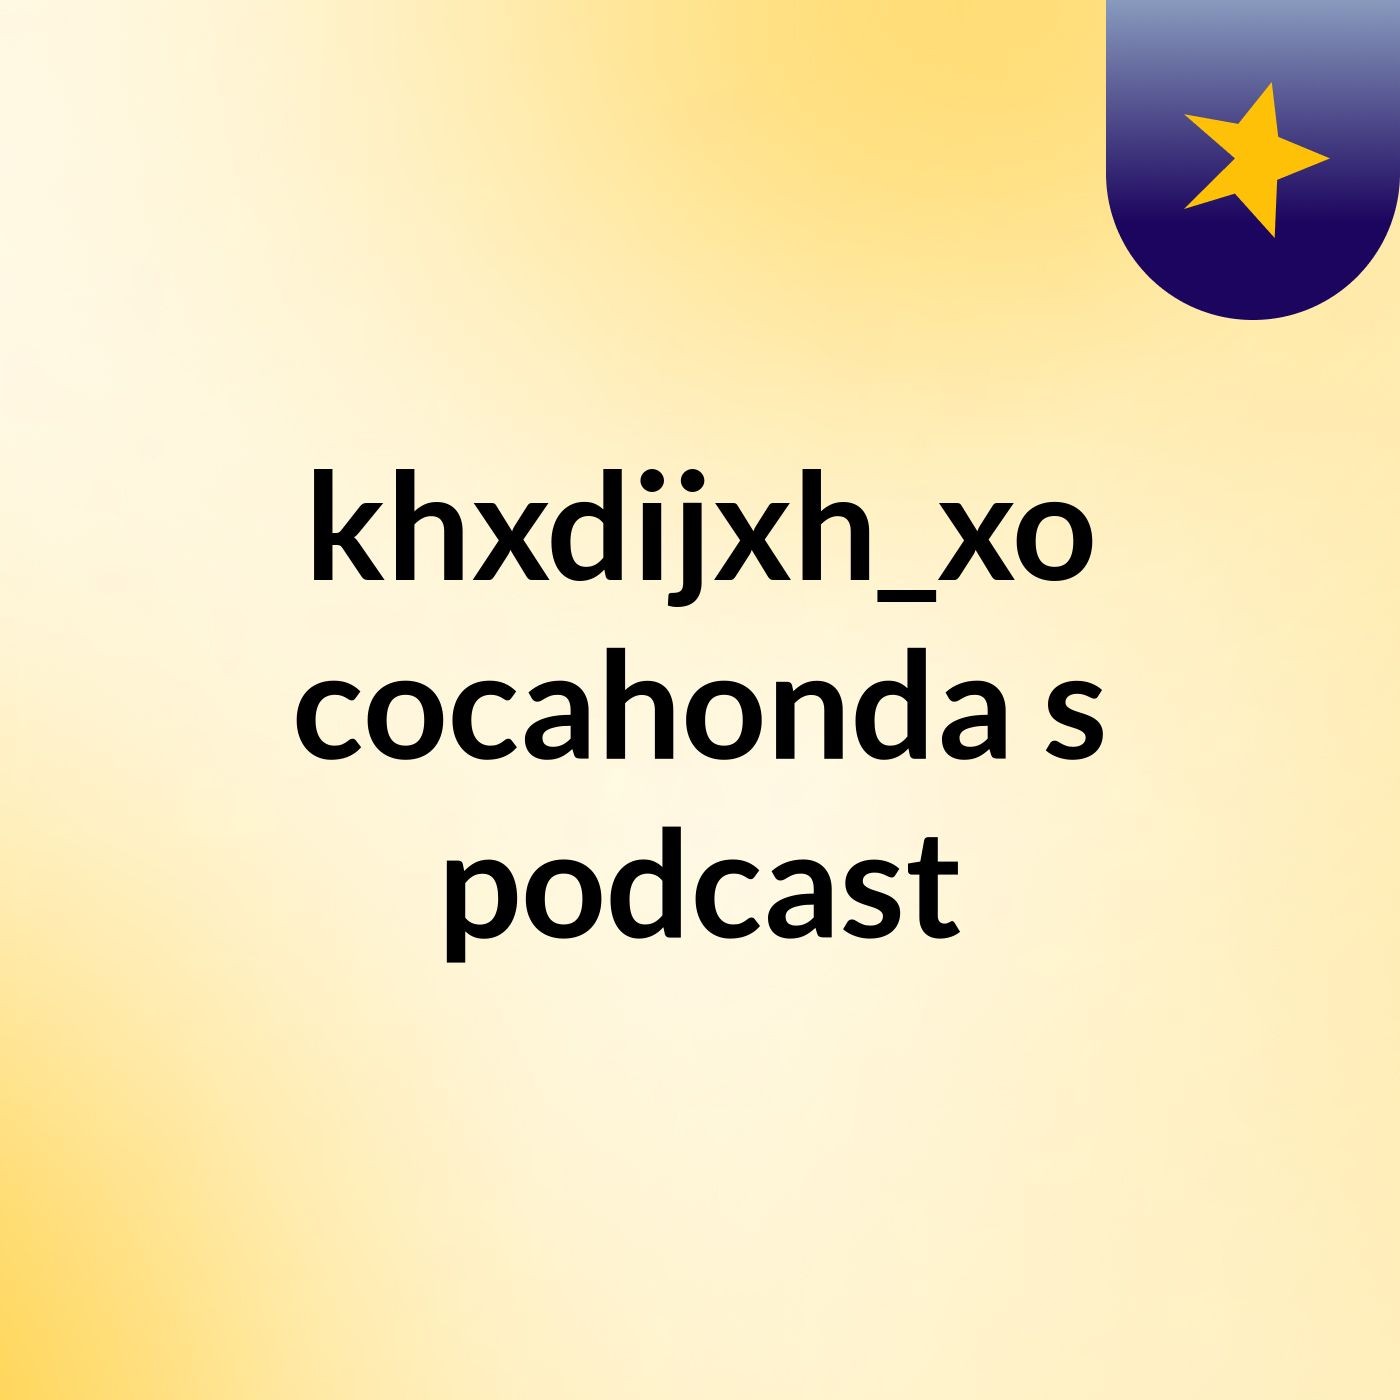 khxdijxh_xo cocahonda's podcast